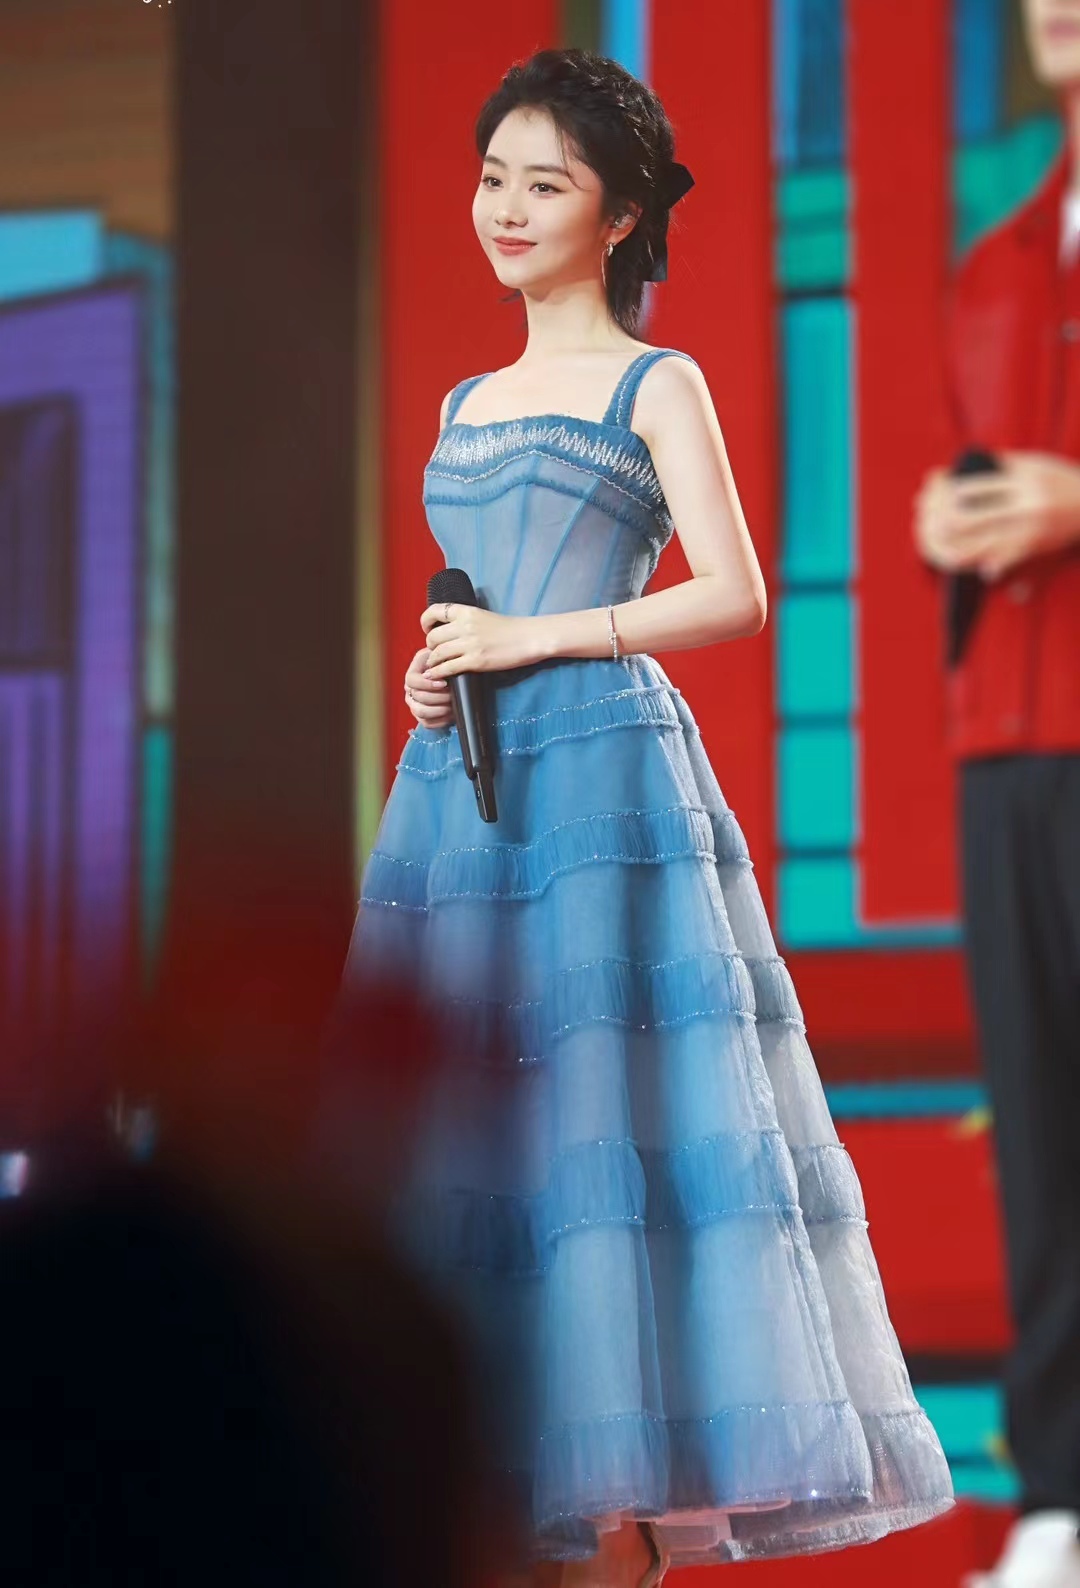 谭松韵北京台春晚造型释出,穿一条蓝色吊带裙,清新又甜美!